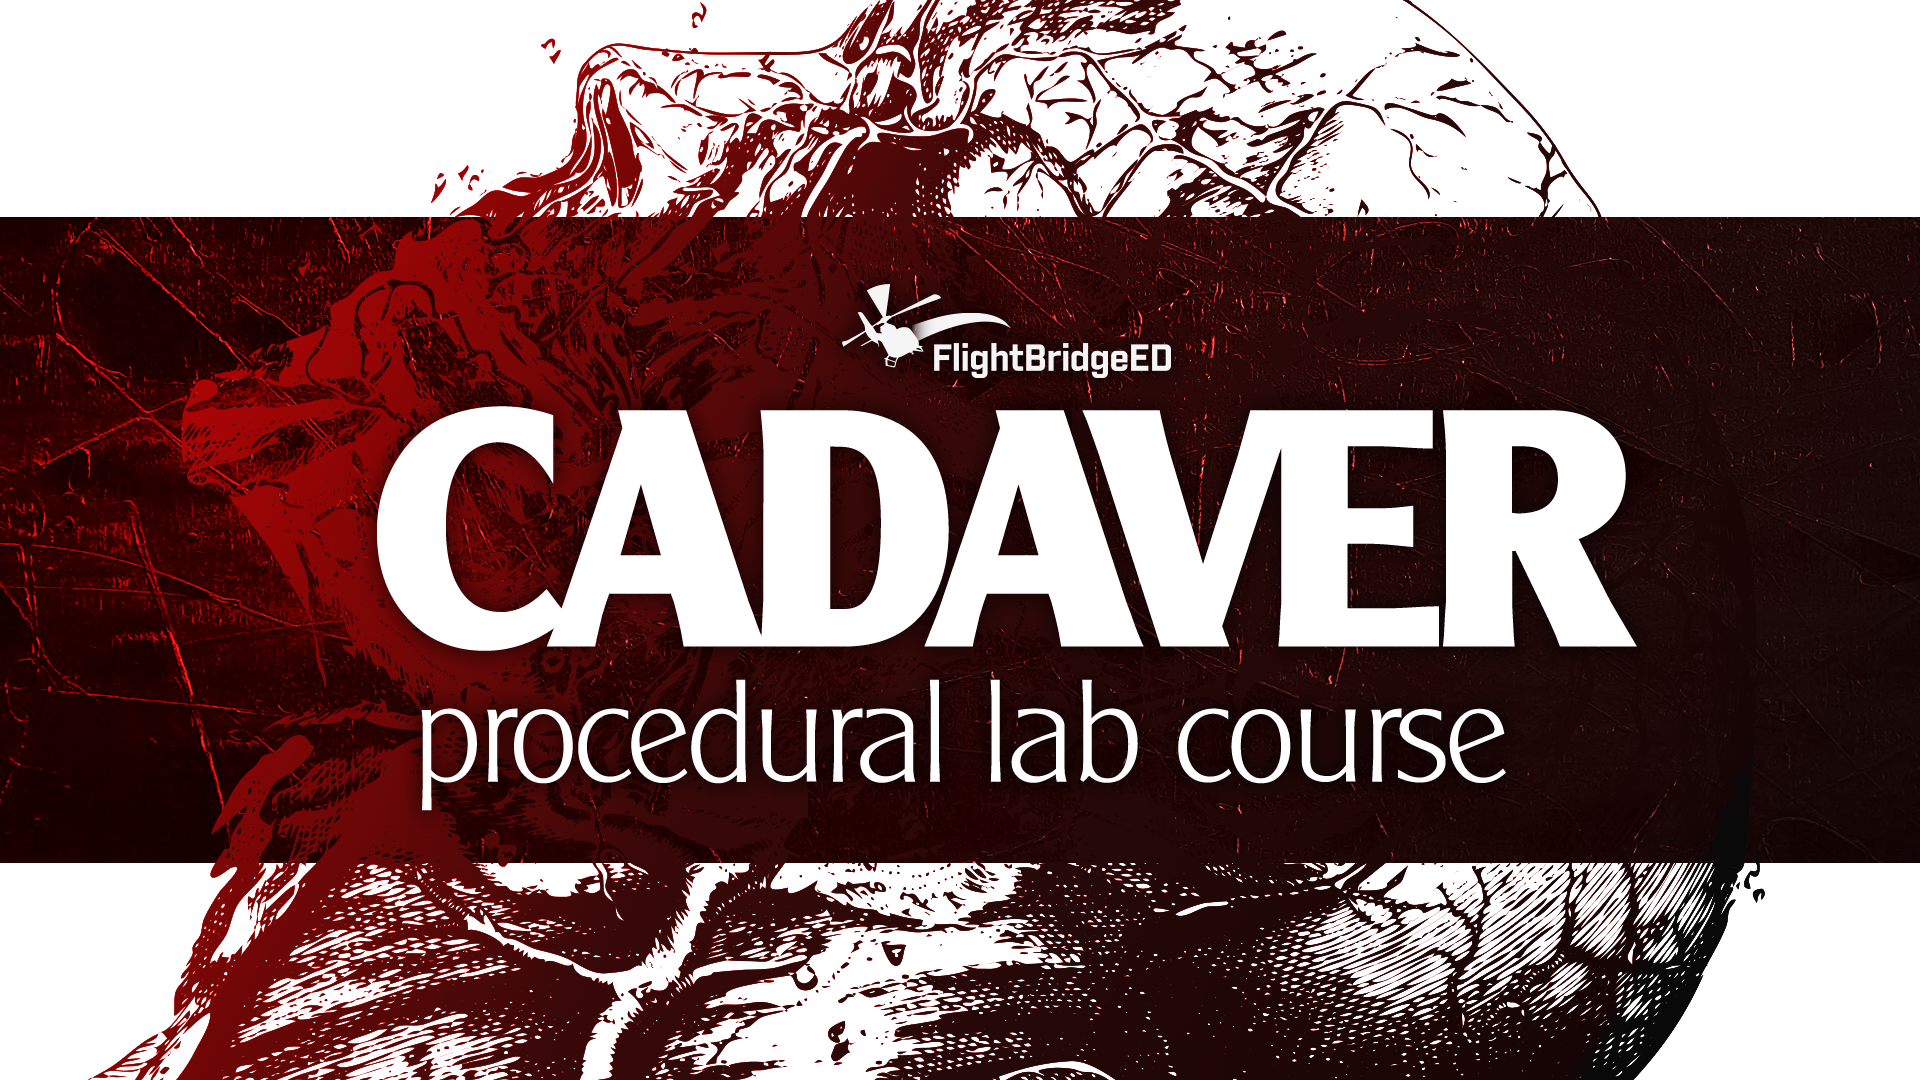 cadaver-procedurallabcourse1920x1080x300